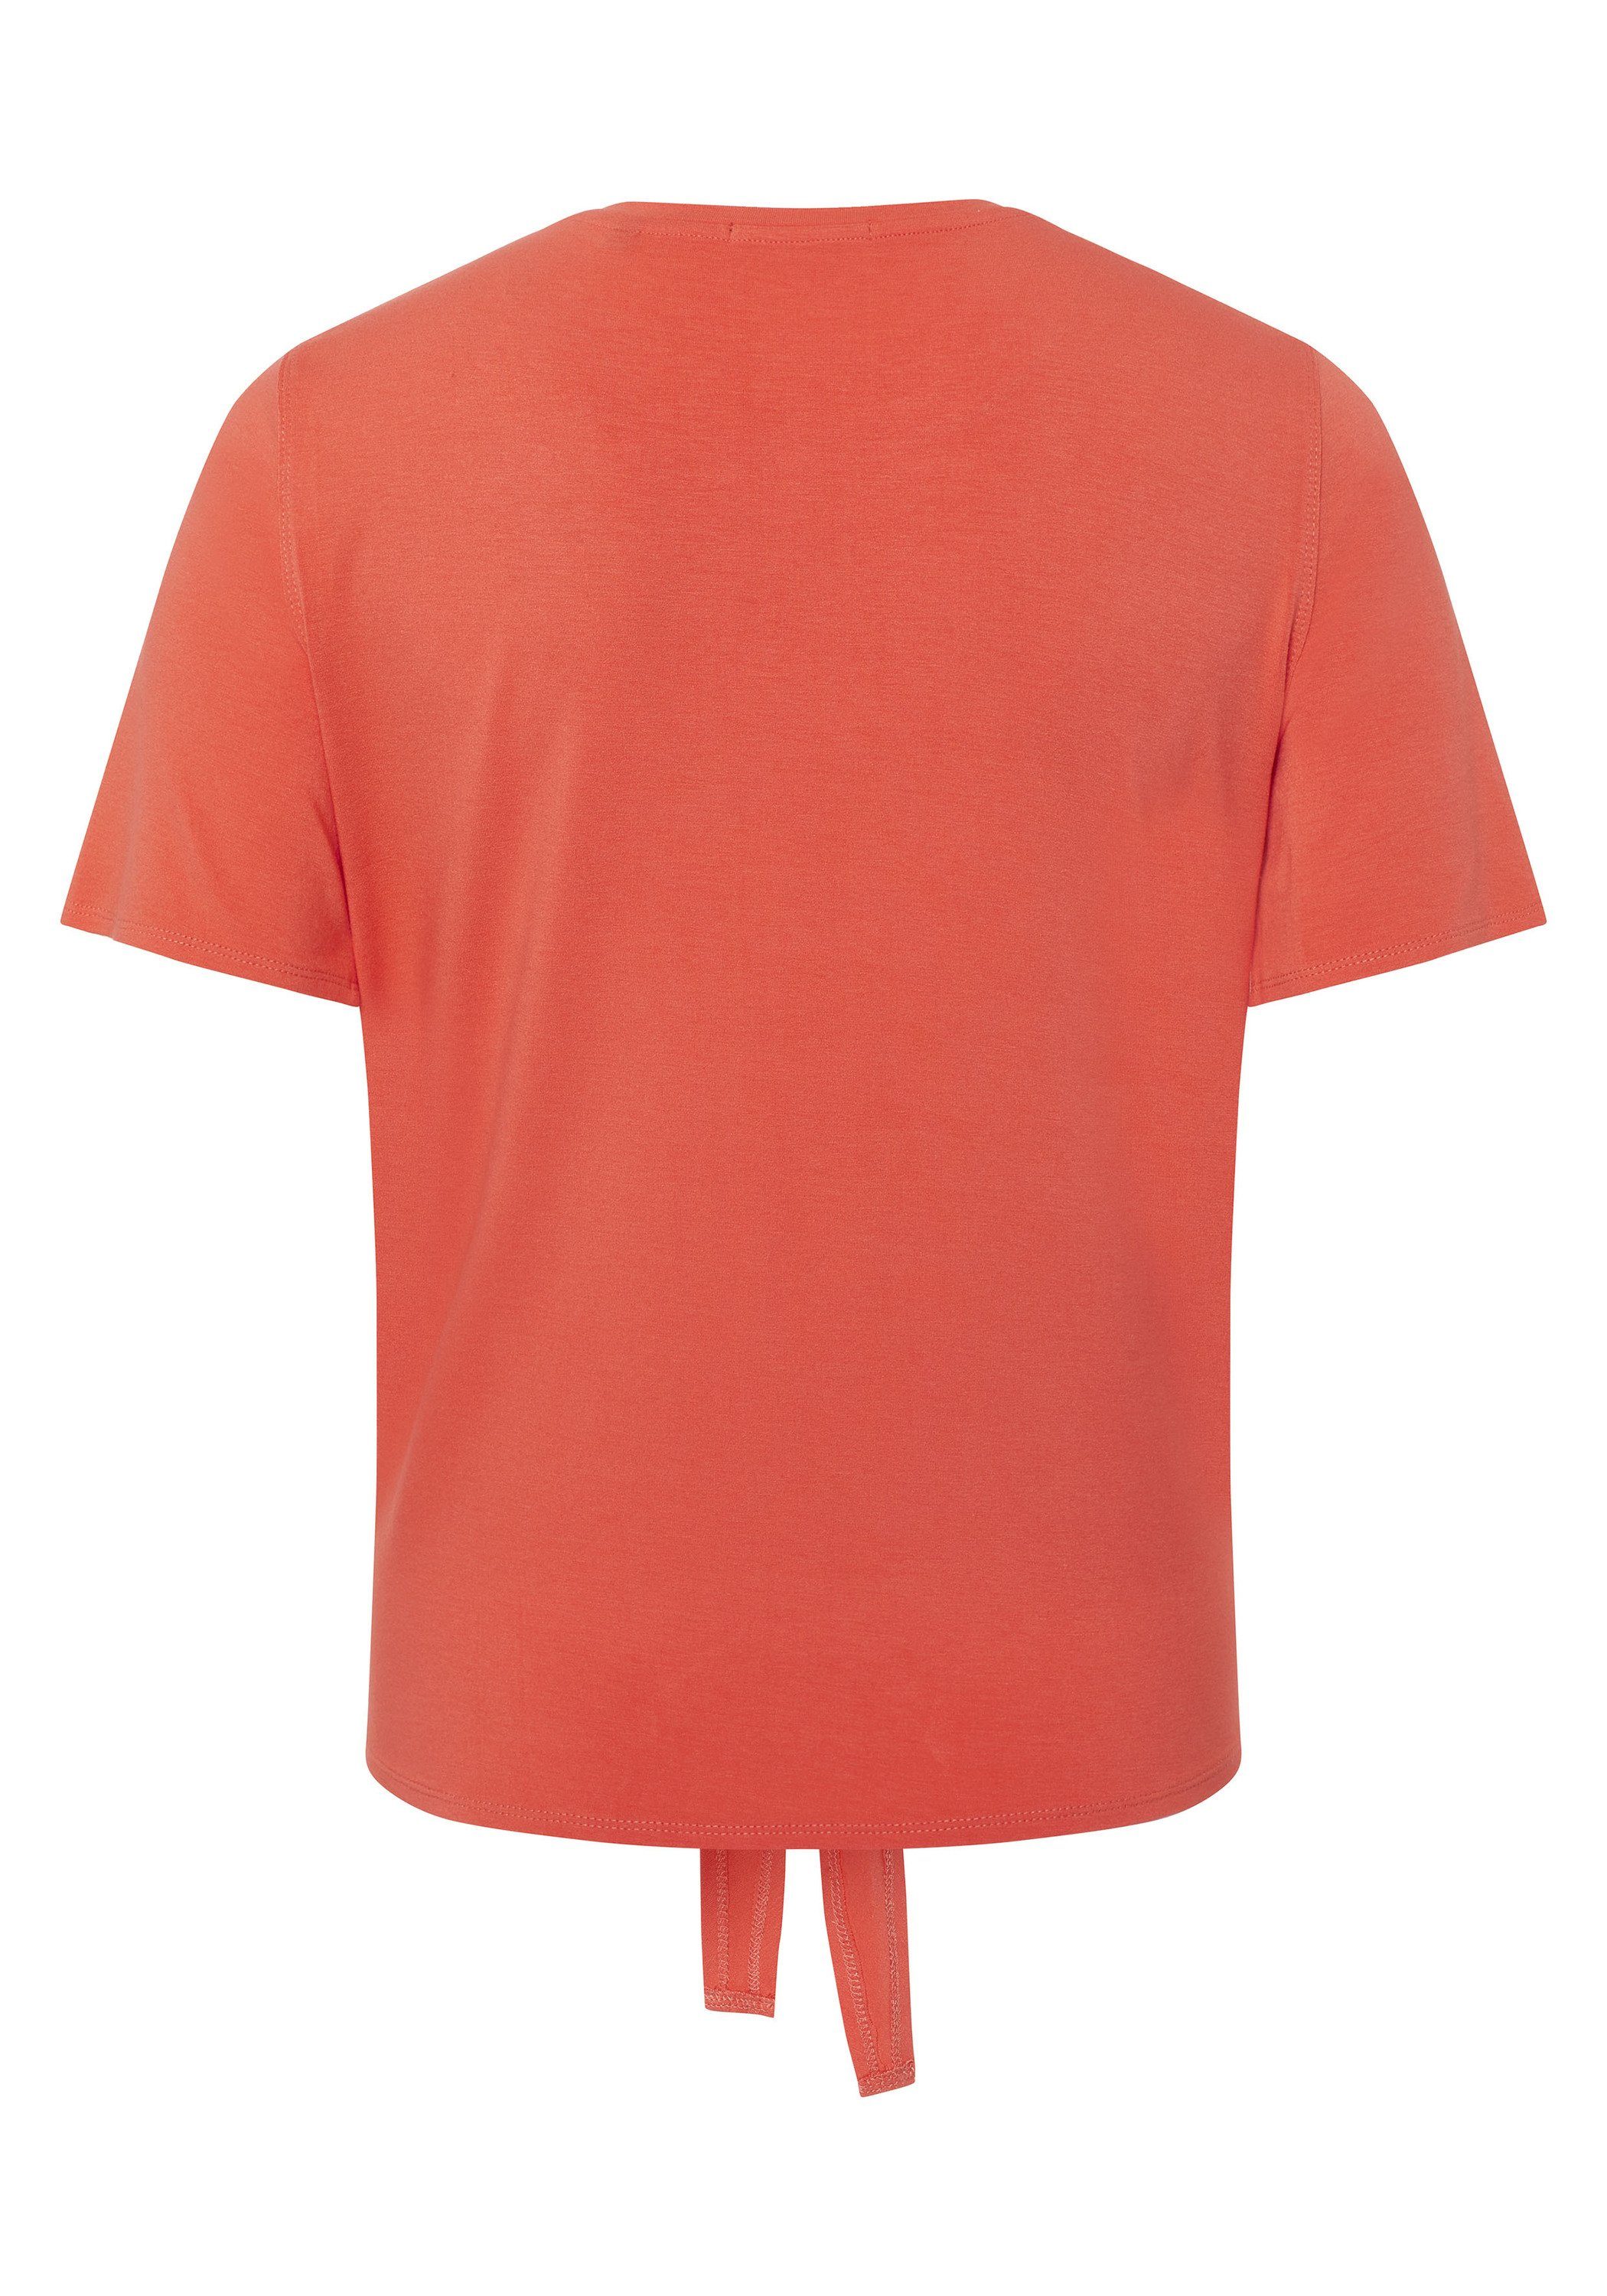 wird zum niedrigsten Preis verkauft! Chiemsee Print-Shirt T-Shirt mit Saum Knoten zum 1